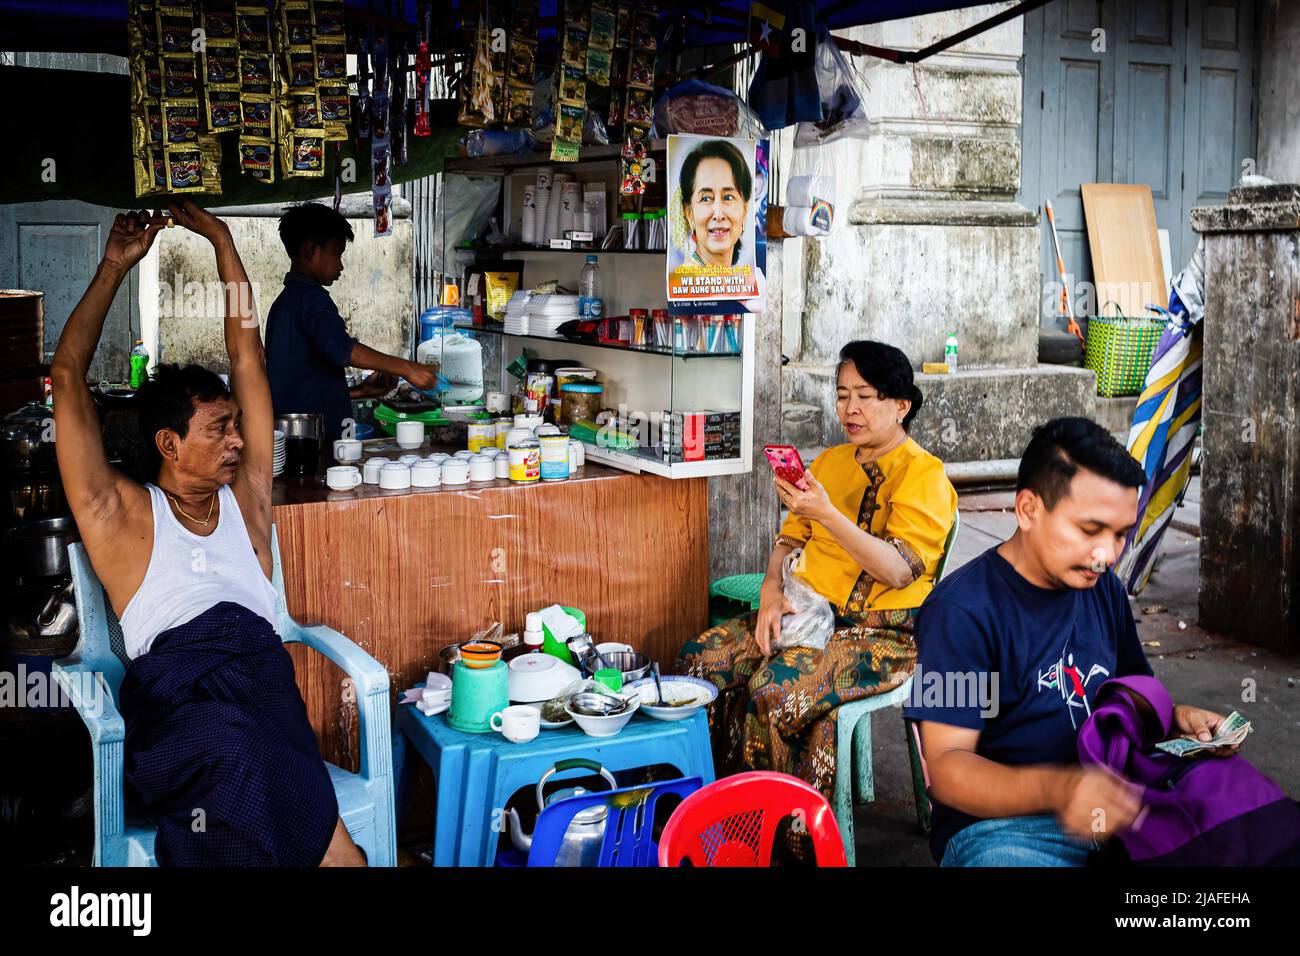 Yangon, Myanmar. 11th janvier 2020. Les gens traînent dans une cabine de nourriture, qui a un portrait d'Aung San Suu Kyi. La vie quotidienne dans les rues animées de Yangon. Yangon, l'ancienne capitale du Myanmar, est toujours la plus grande ville et le centre industriel et commercial du pays.vie quotidienne sur les rues animées et les principaux sites de Yangon, l'ancienne capitale du Myanmar. La ville est toujours la plus grande et le centre industriel et commercial du pays. (Image de crédit : © Eduardo Leal/SOPA Images via ZUMA Press Wire) Banque D'Images